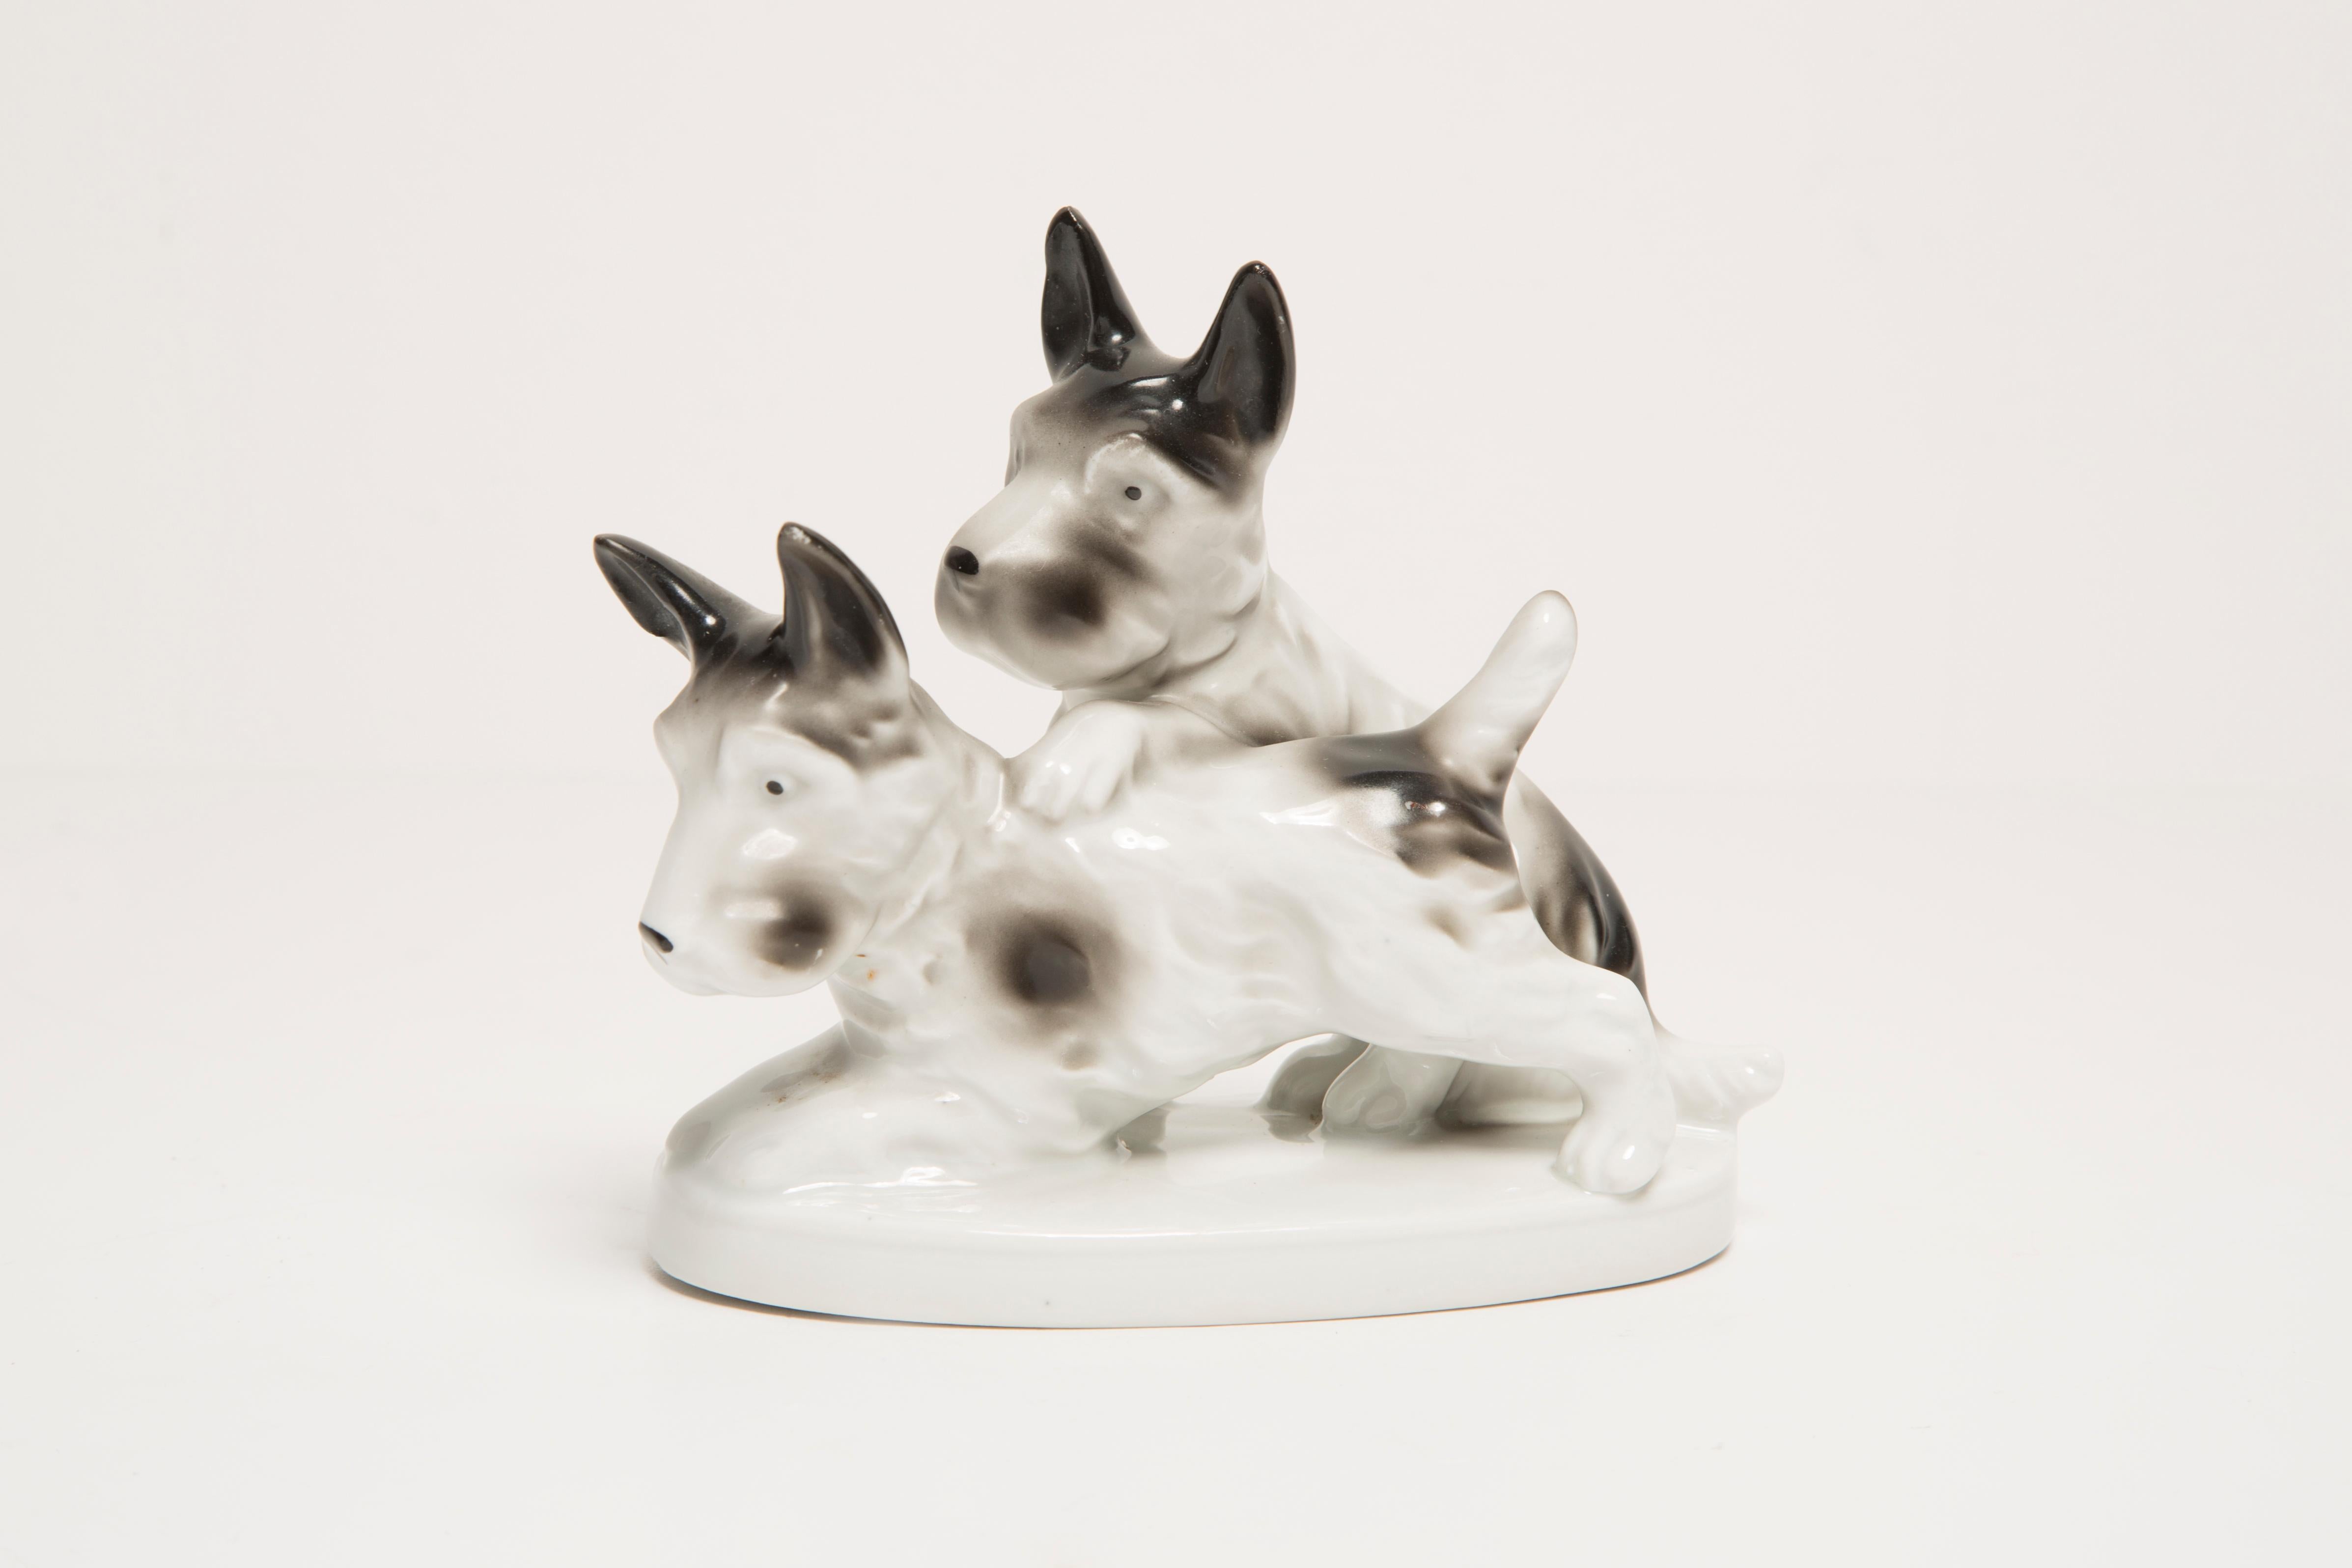 Bemalte Keramik, sehr guter originaler Vintage-Zustand. Keine Schäden oder Risse. Schöne und einzigartige dekorative Skulptur. Small Dogs Sculpture wurde in Italien hergestellt. Nur ein Artikel verfügbar.